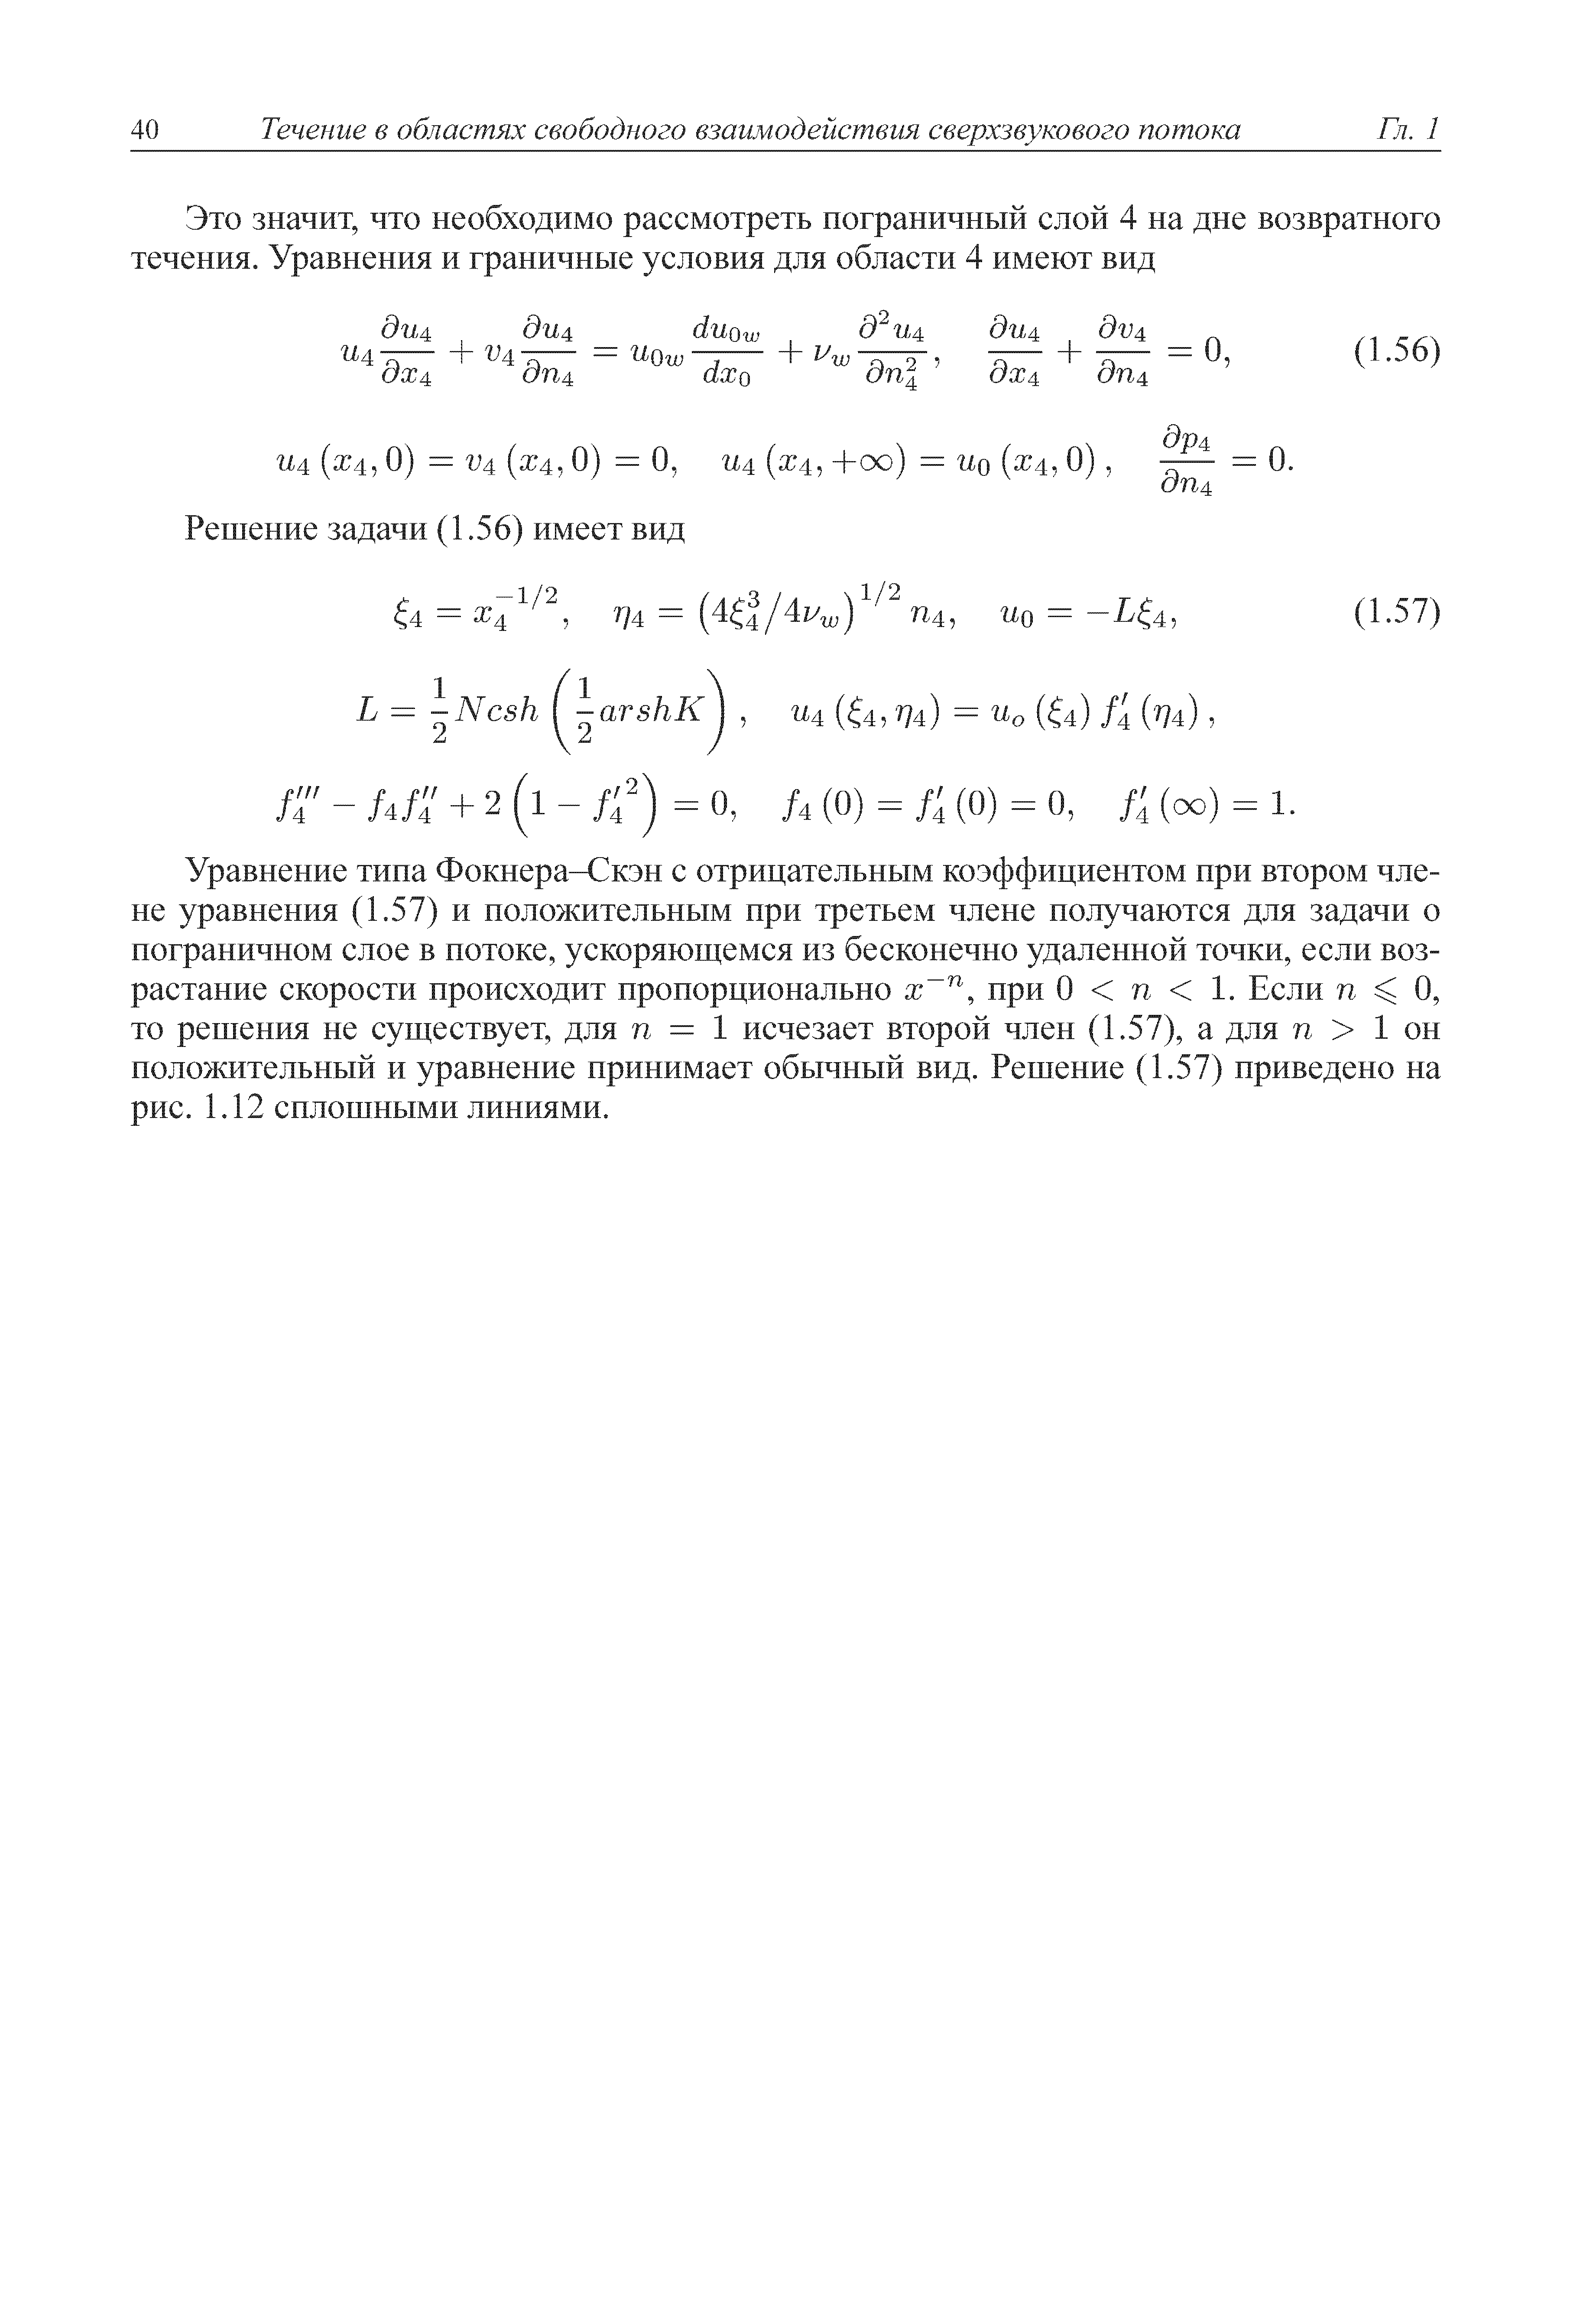 Уравнение типа Фокнера-Сюн с отрицательным коэффициентом при втором члене уравнения (1.57) и положительным при третьем члене получаются для задачи о пограничном слое в потоке, ускоряюш емся из бесконечно удаленной точки, если воз растание скорости происходит пропорционально х , при О п 1. Если п О, то решения не суш ествует, для п = 1 исчезает второй член (1.57), а для п 1 он положительный и уравнение принимает обычный вид. Решение (1.57) приведено на рис. 1.12 сплошными линиями.
